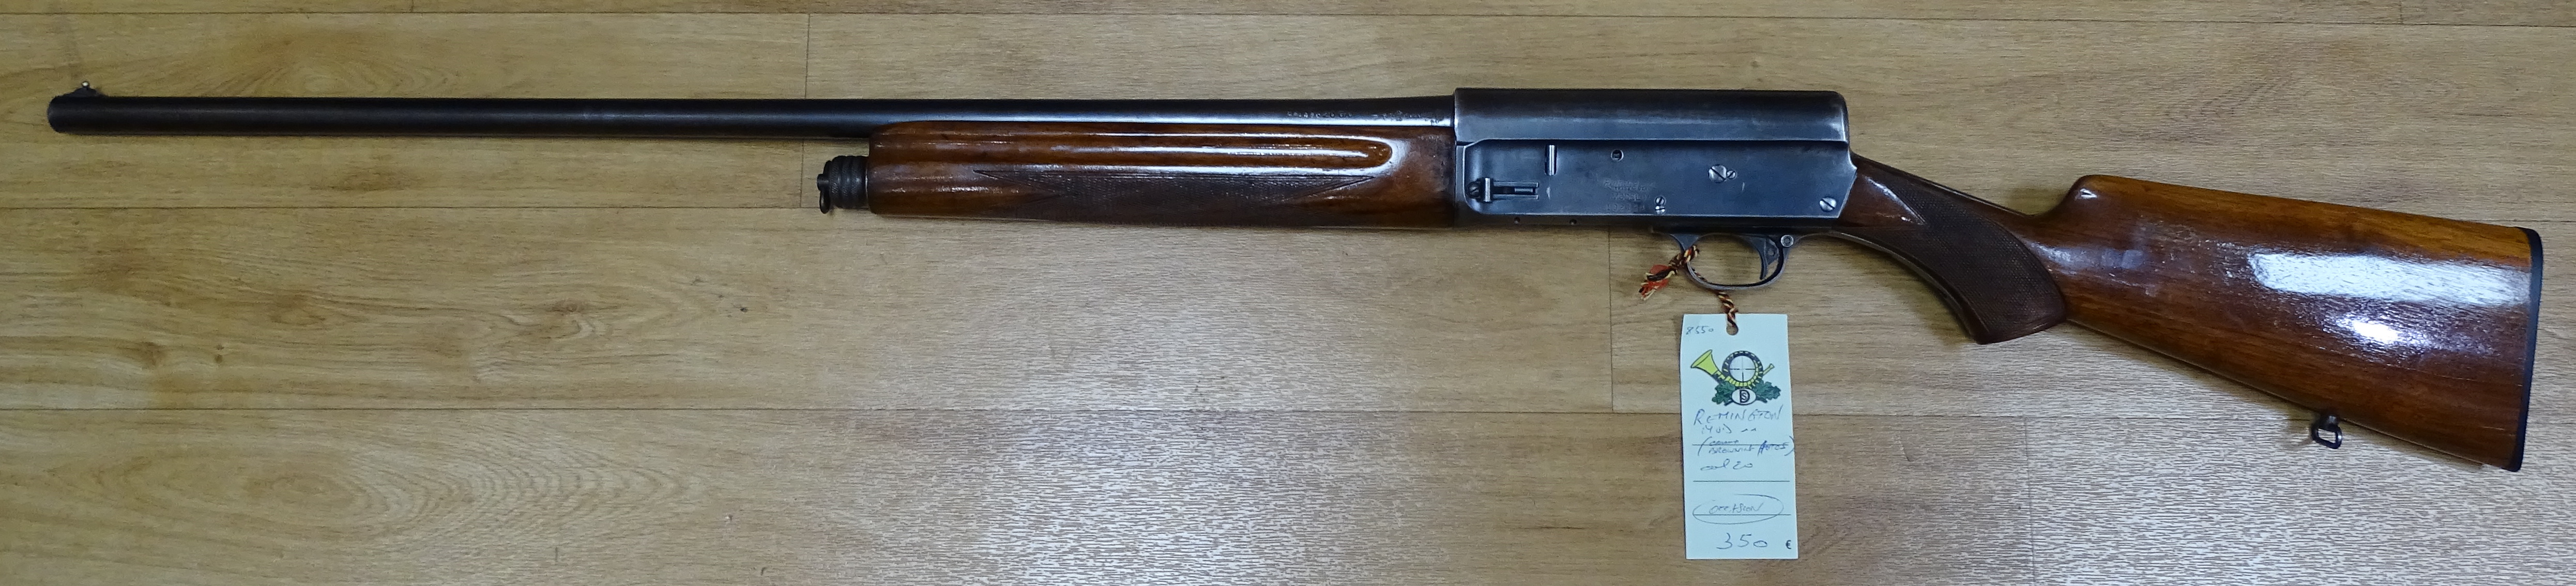 Remington Mod 11